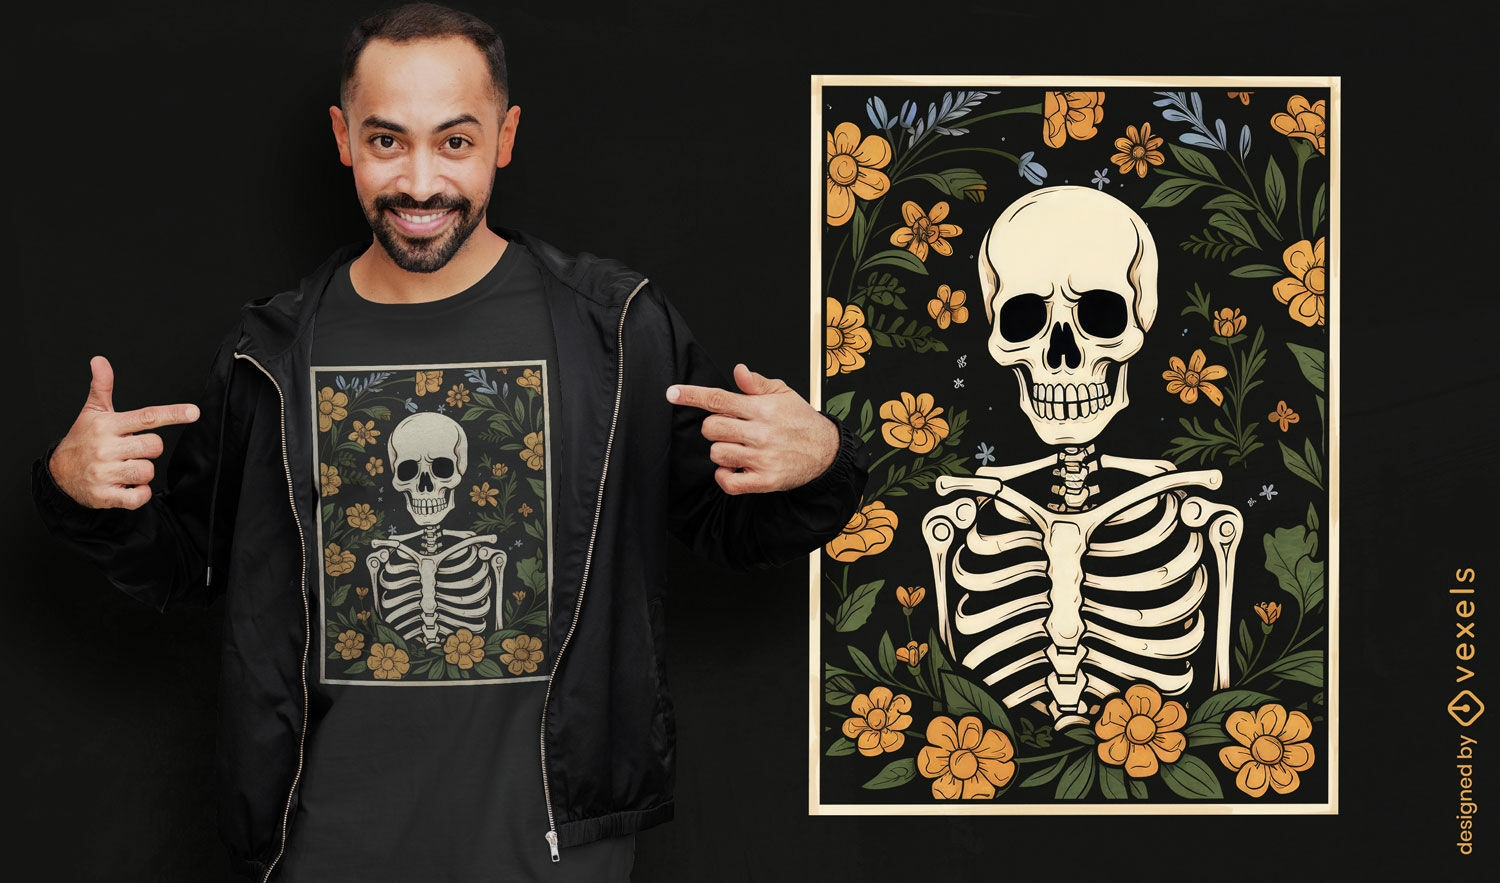 Dise?o de camiseta oscura de esqueleto con flores.